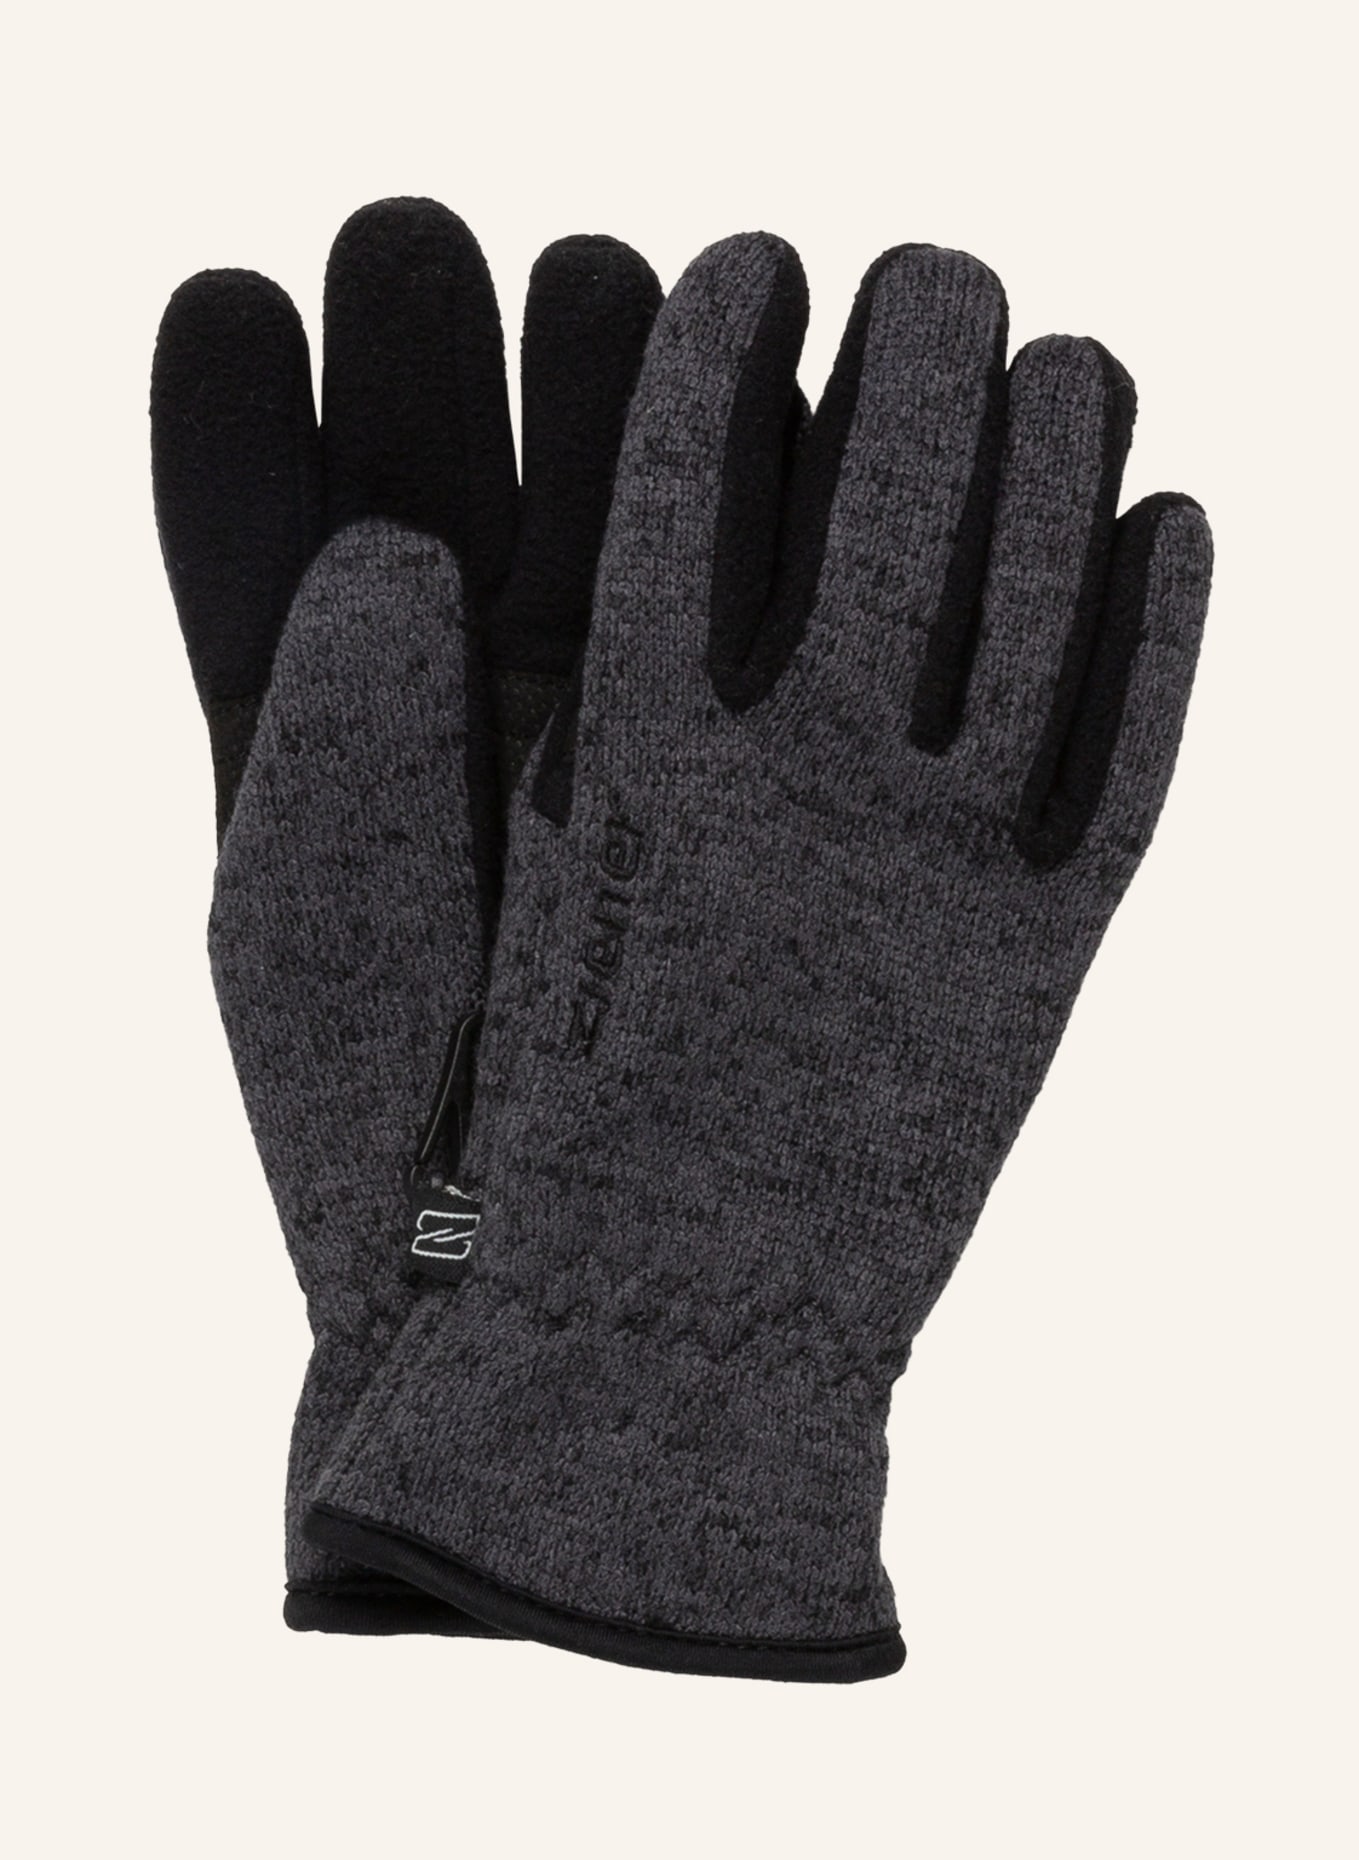 ziener Multisport-Handschuhe LIMAGIOS JUNIOR in schwarz/ dunkelgrau | Handschuhe